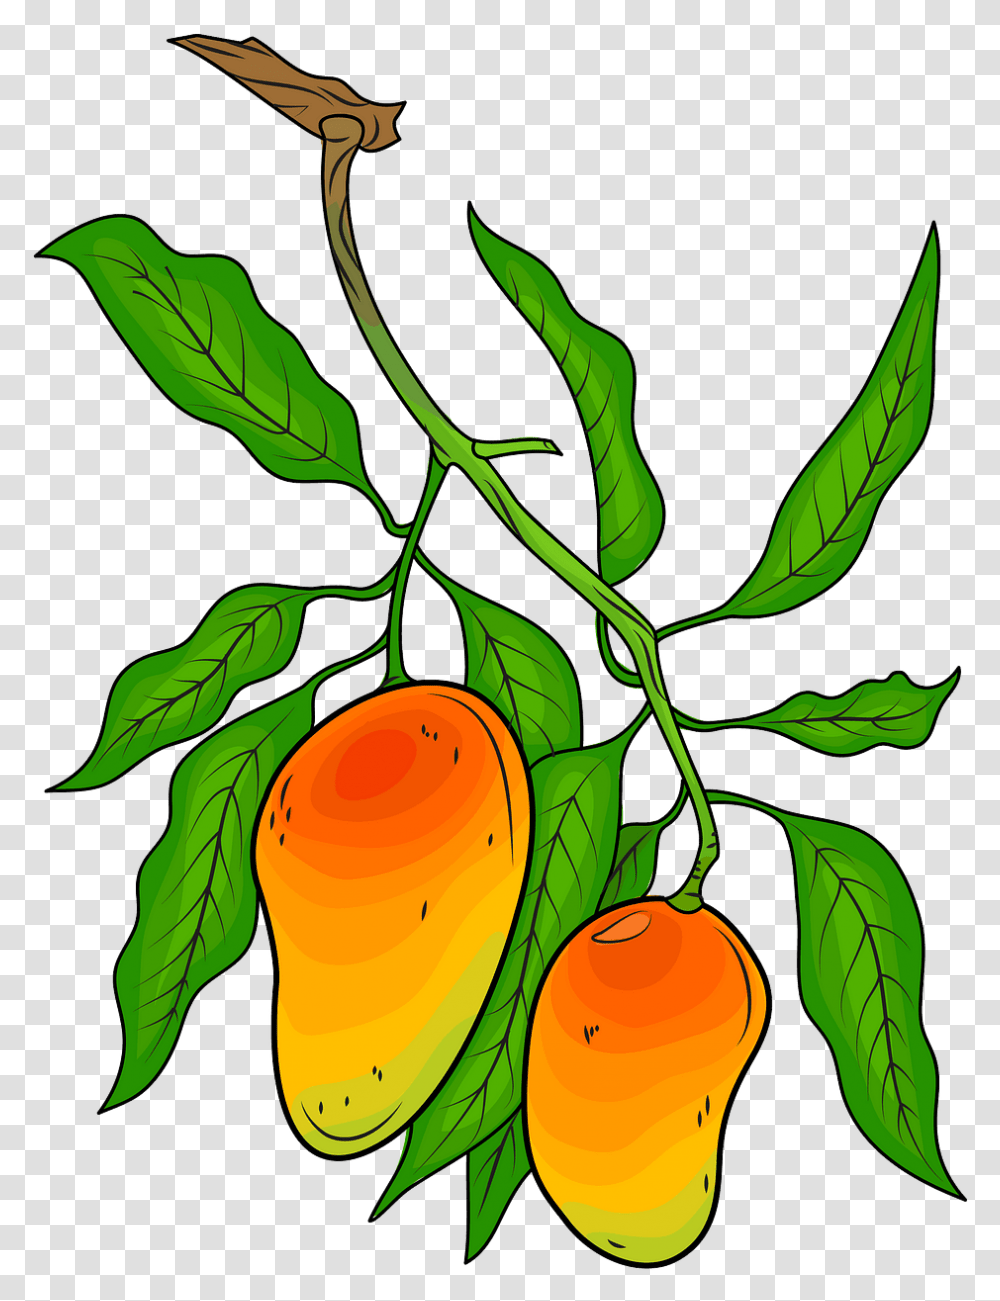 Mango Tree Illustration, Plant, Fruit, Food, Leaf Transparent Png